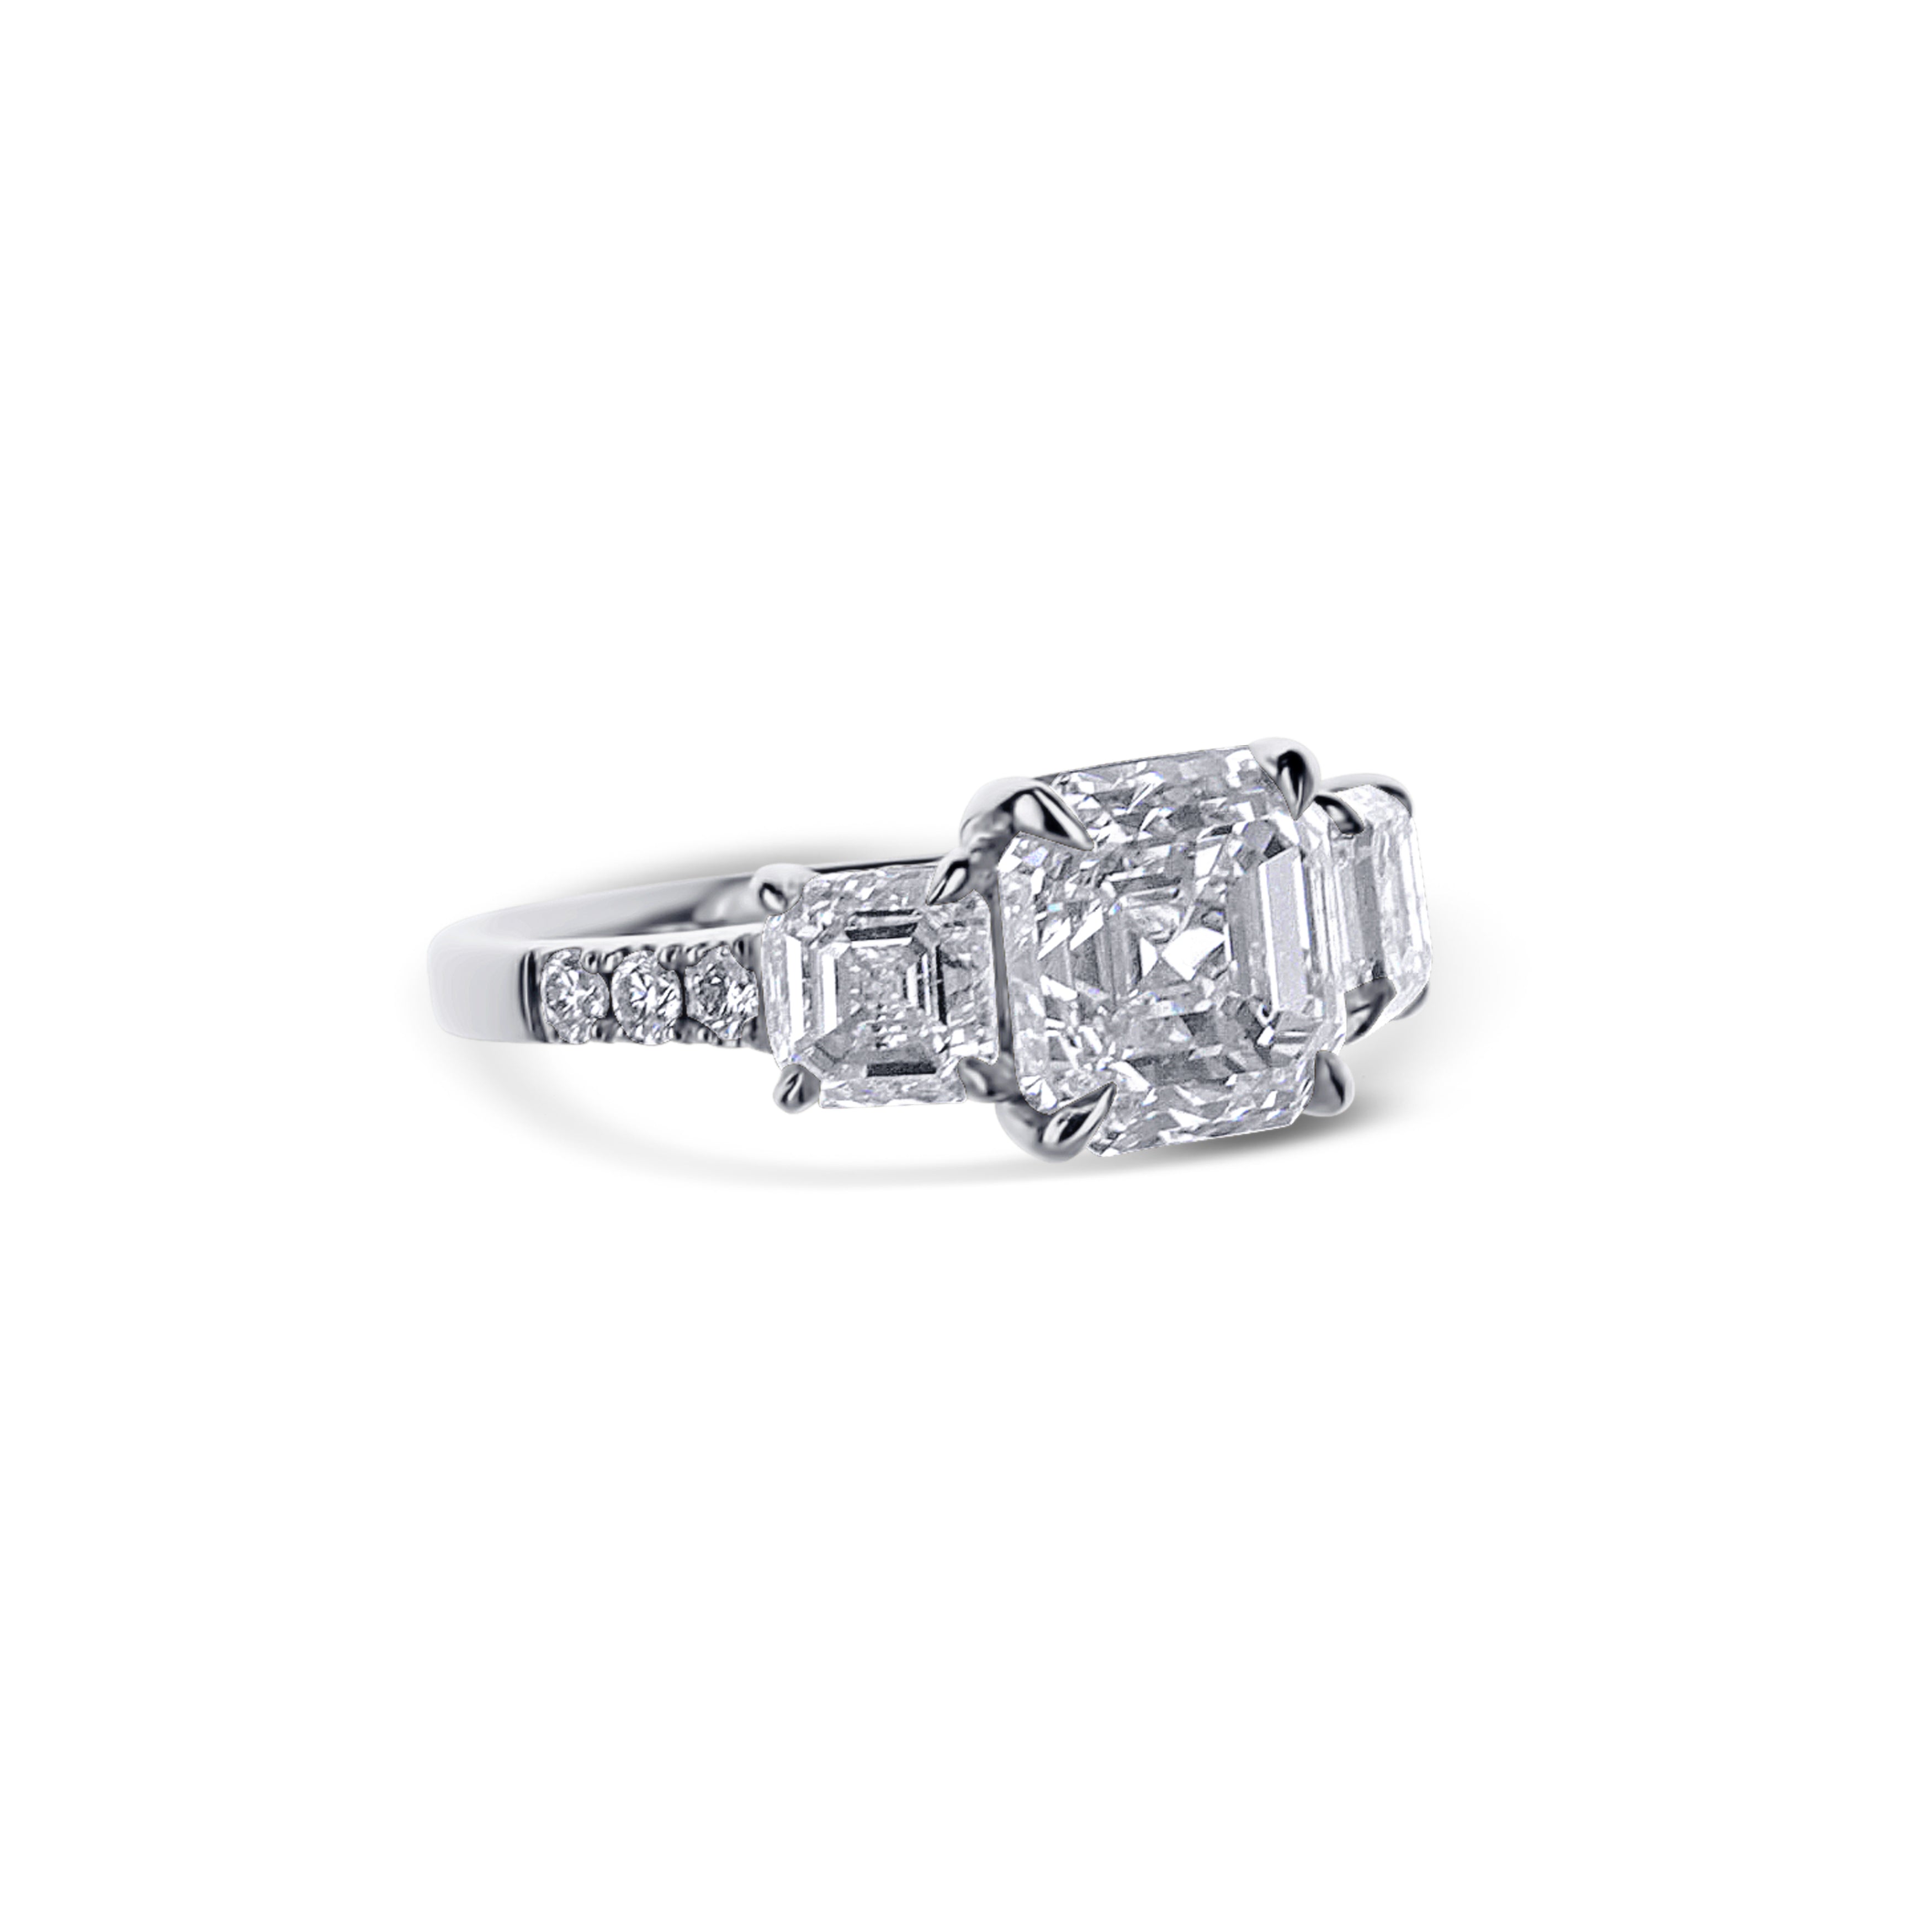 Platinum Three Stone Square Asscher Cut And 2 Accent Asscher Cut Diamond Engagement Ring